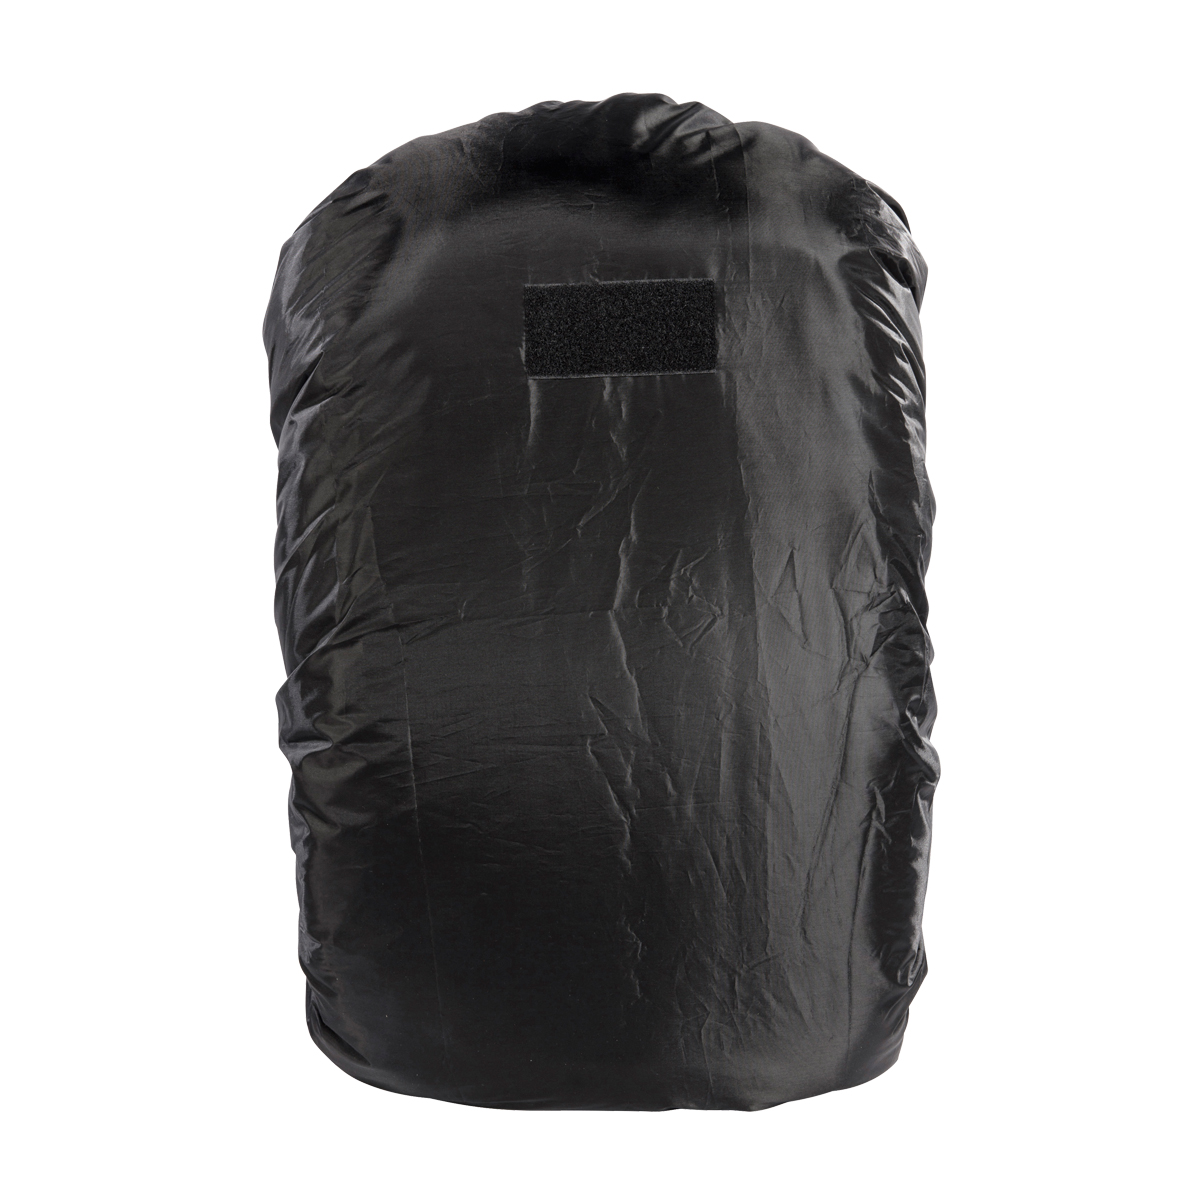 Produktbild von Tasmanian Tiger Raincover XL, schwarz - Regenhülle für 60-100 Liter Rucksack